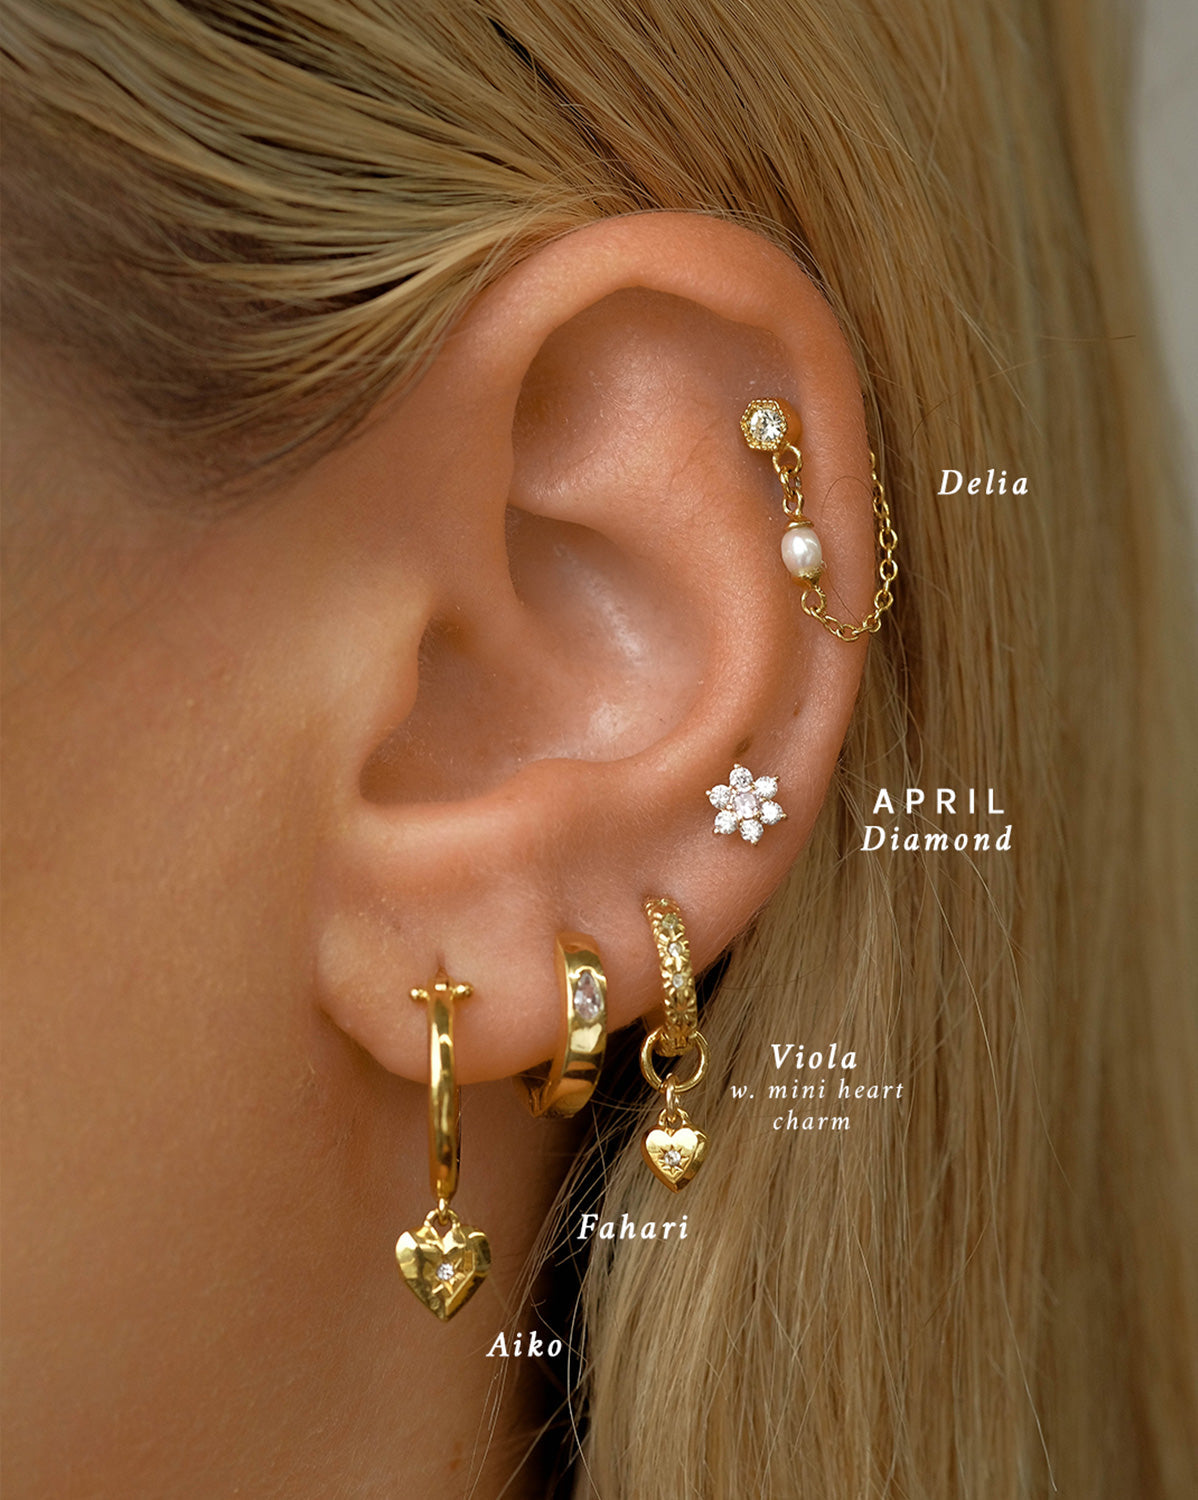 Criss Cross X Ear Cuff Earrings No Pierce | Conch Cartilage Hoop Ring –  Impuria Ear Piercing Jewelry